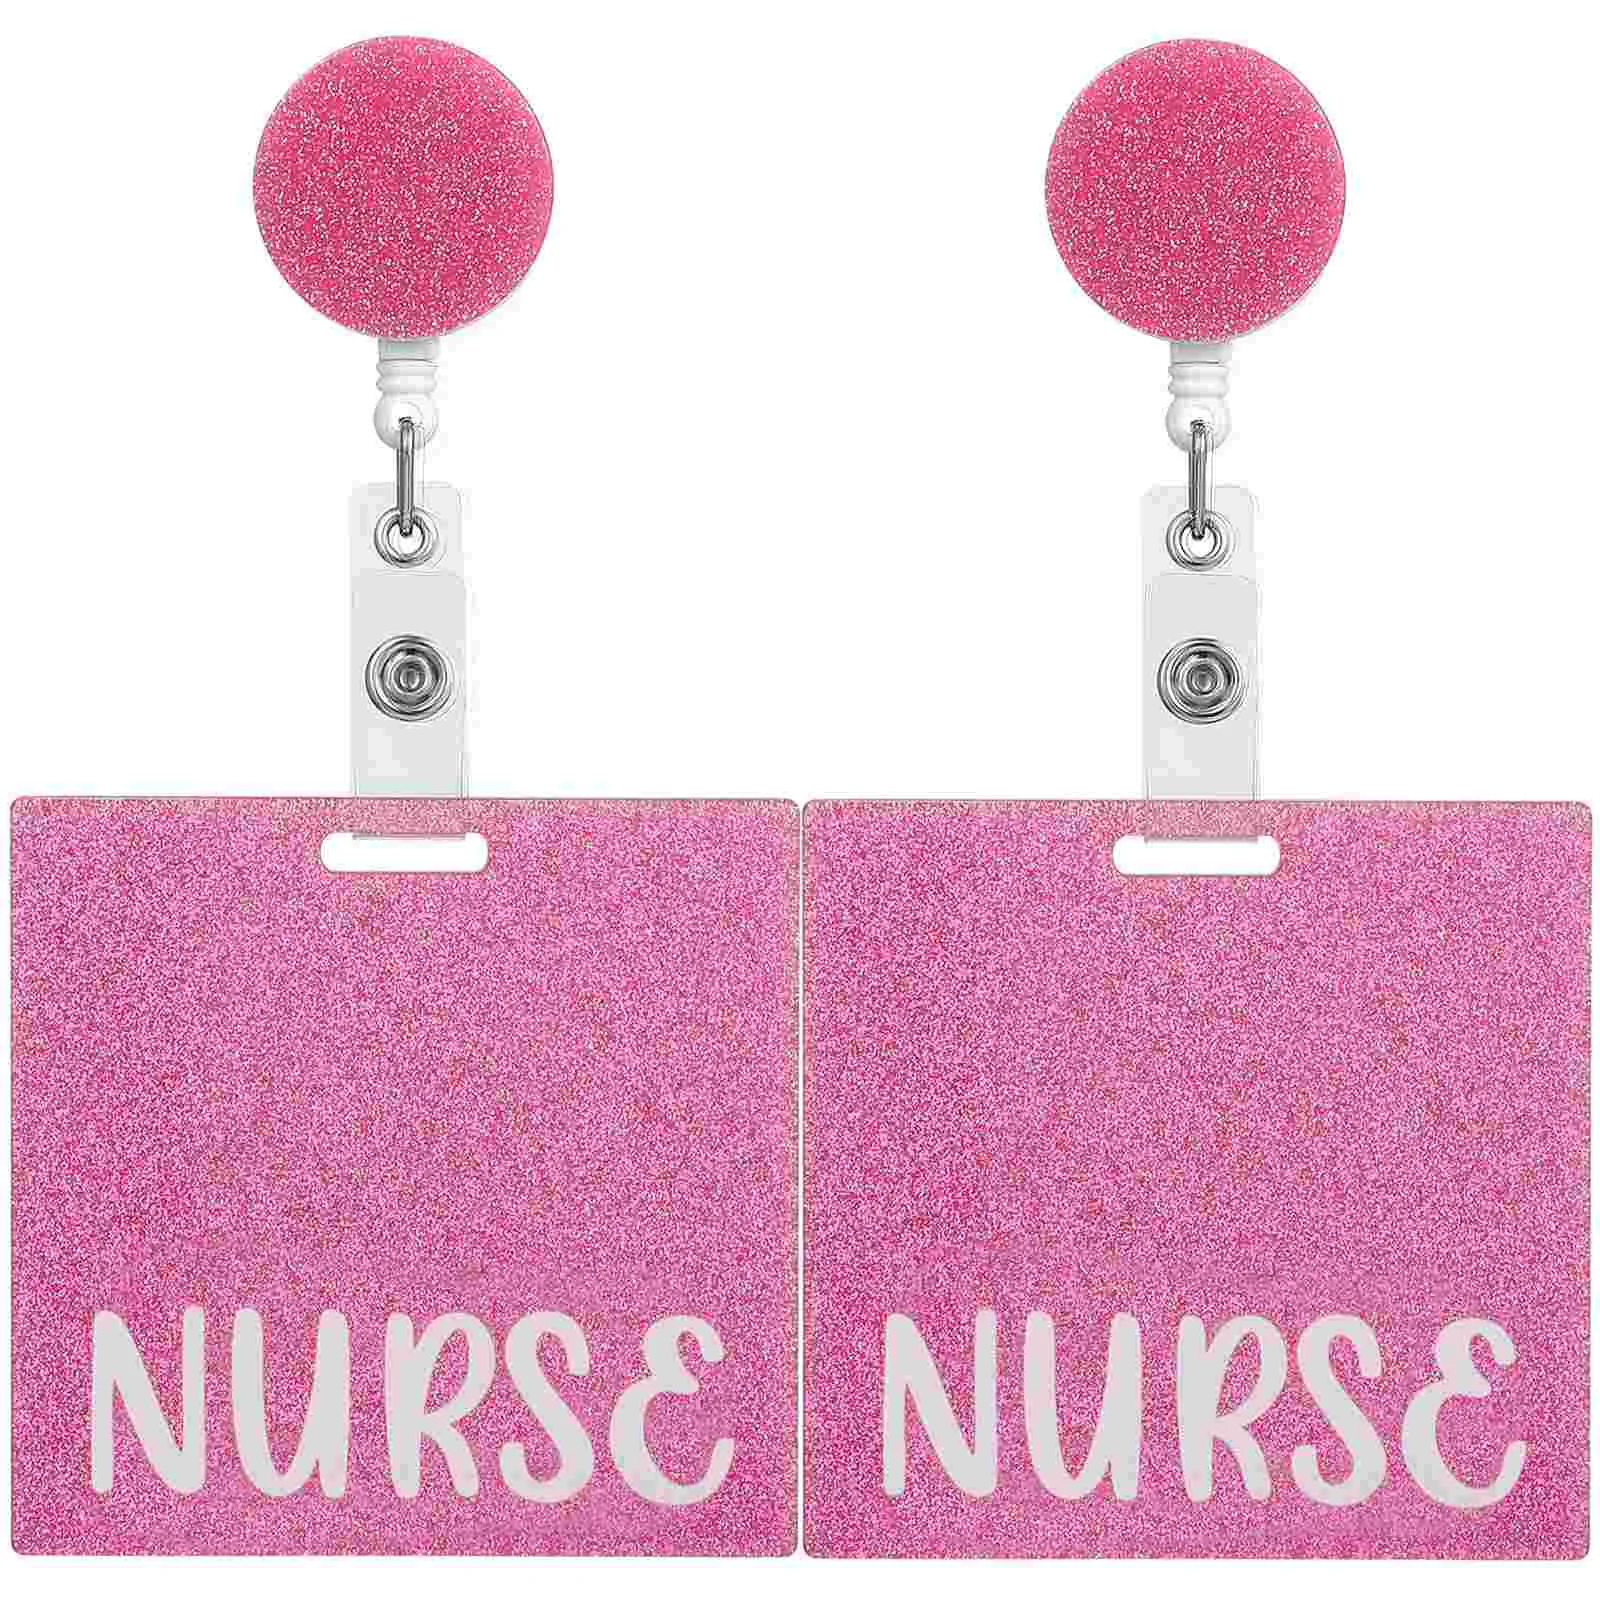 Карта значка медсестры Значок медсестры Buddy Выдвижной значок Катушка Значок Зажим Розовый горизонтальный держатель значка Аксессуары для значков Медсестры